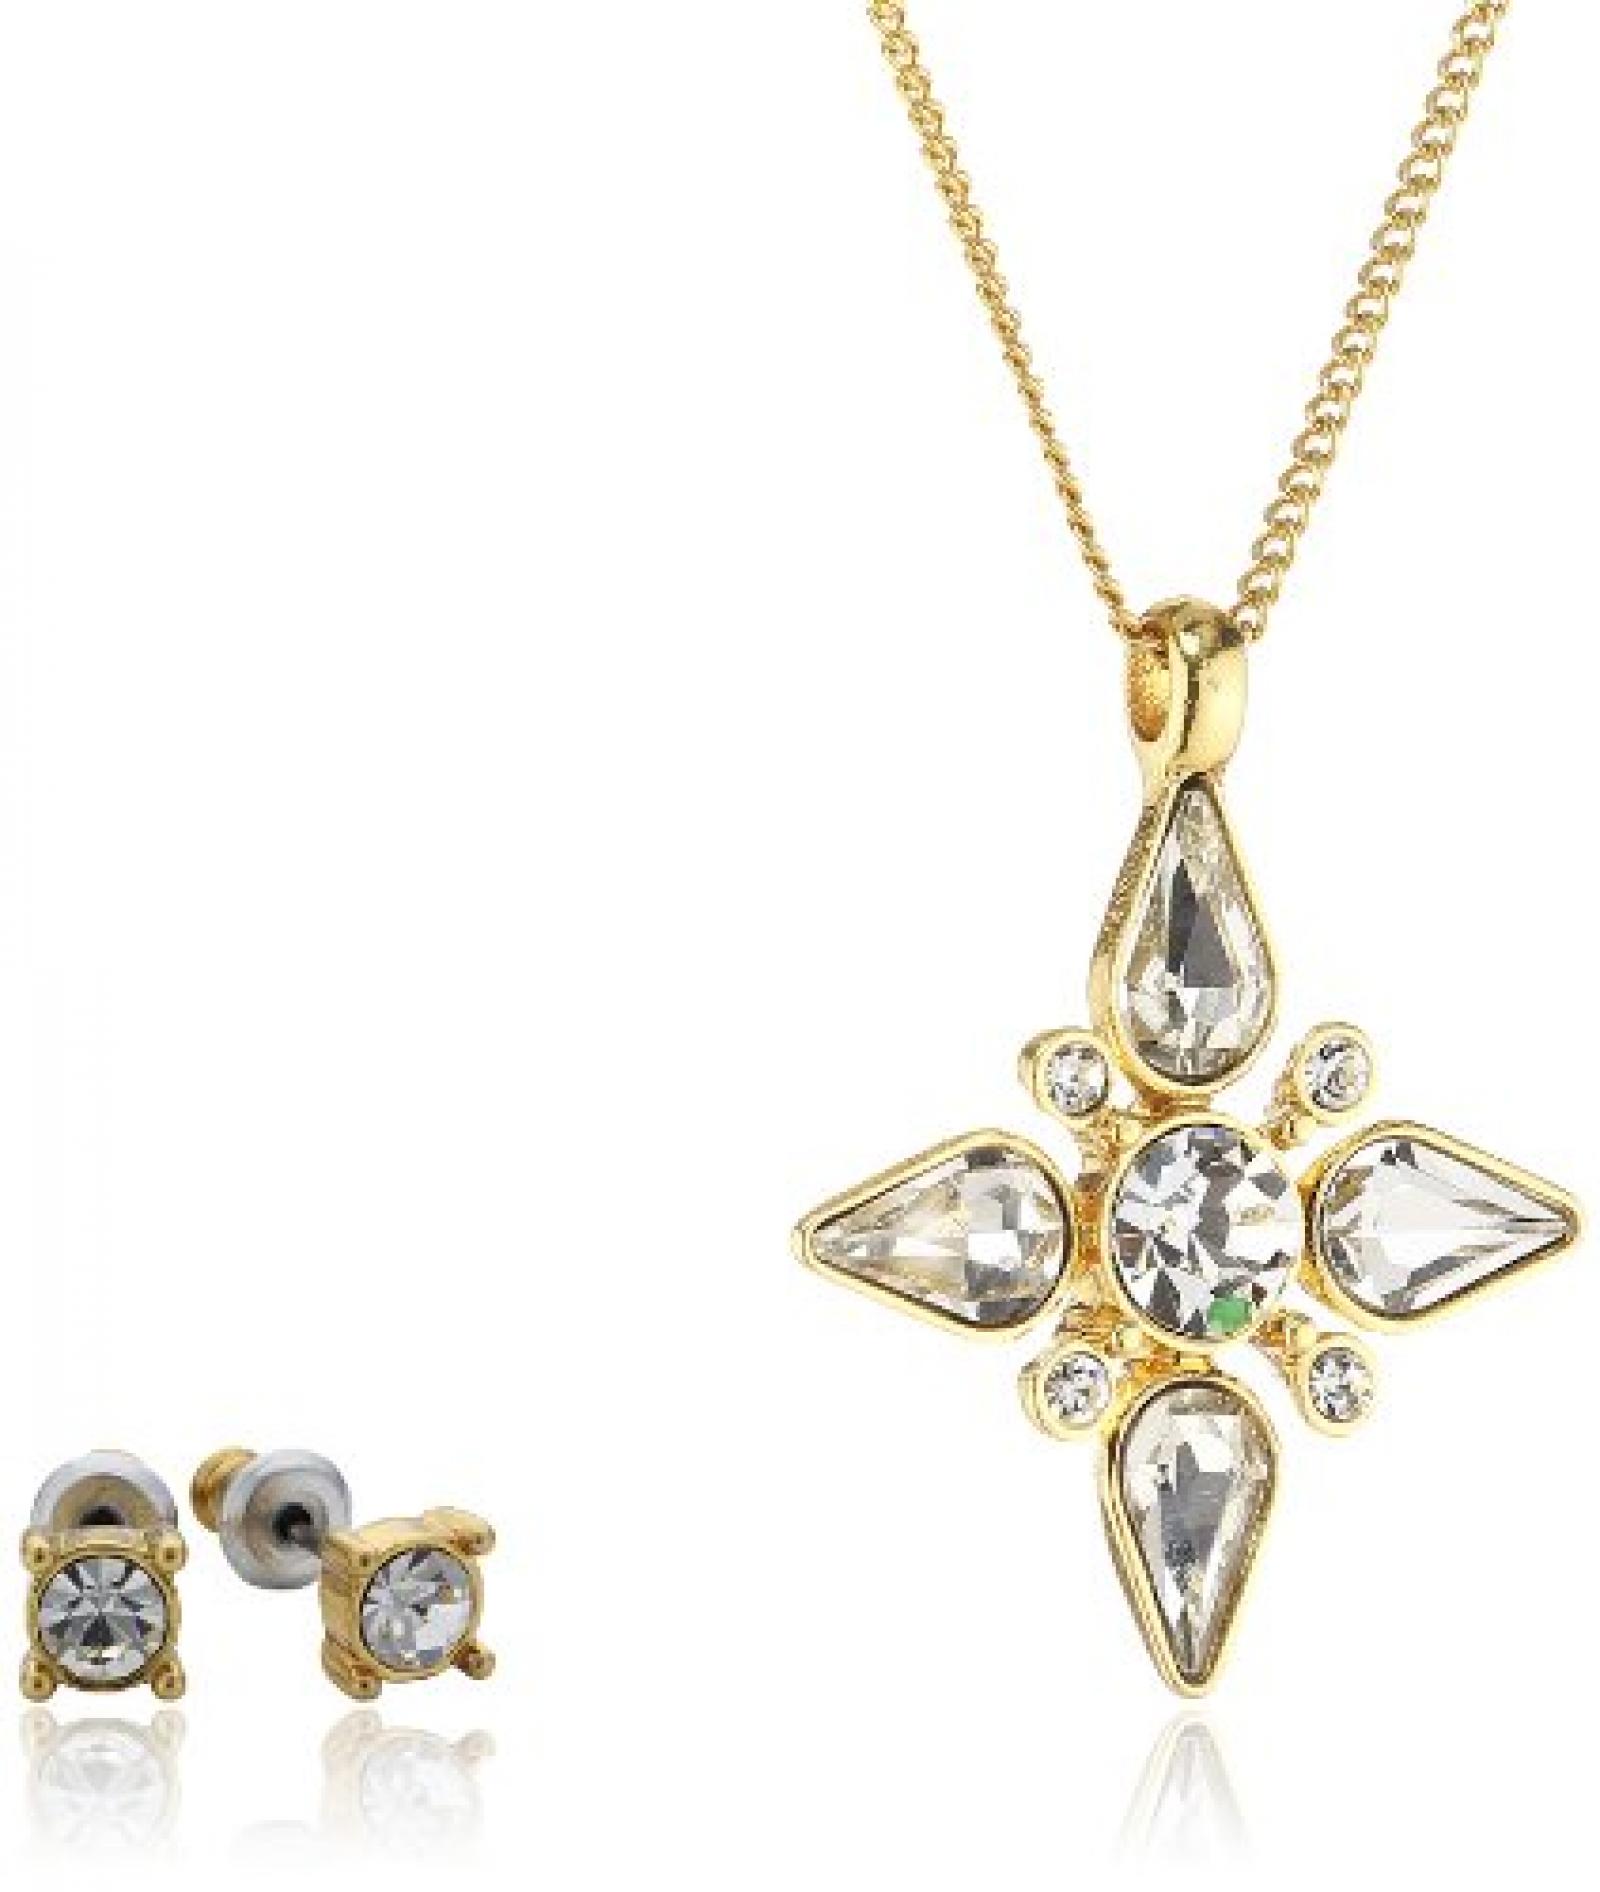 Pilgrim Jewelry Damen-Schmuckset: Halskette + Ohrstecker vergoldet Kristall weiß 901342009 